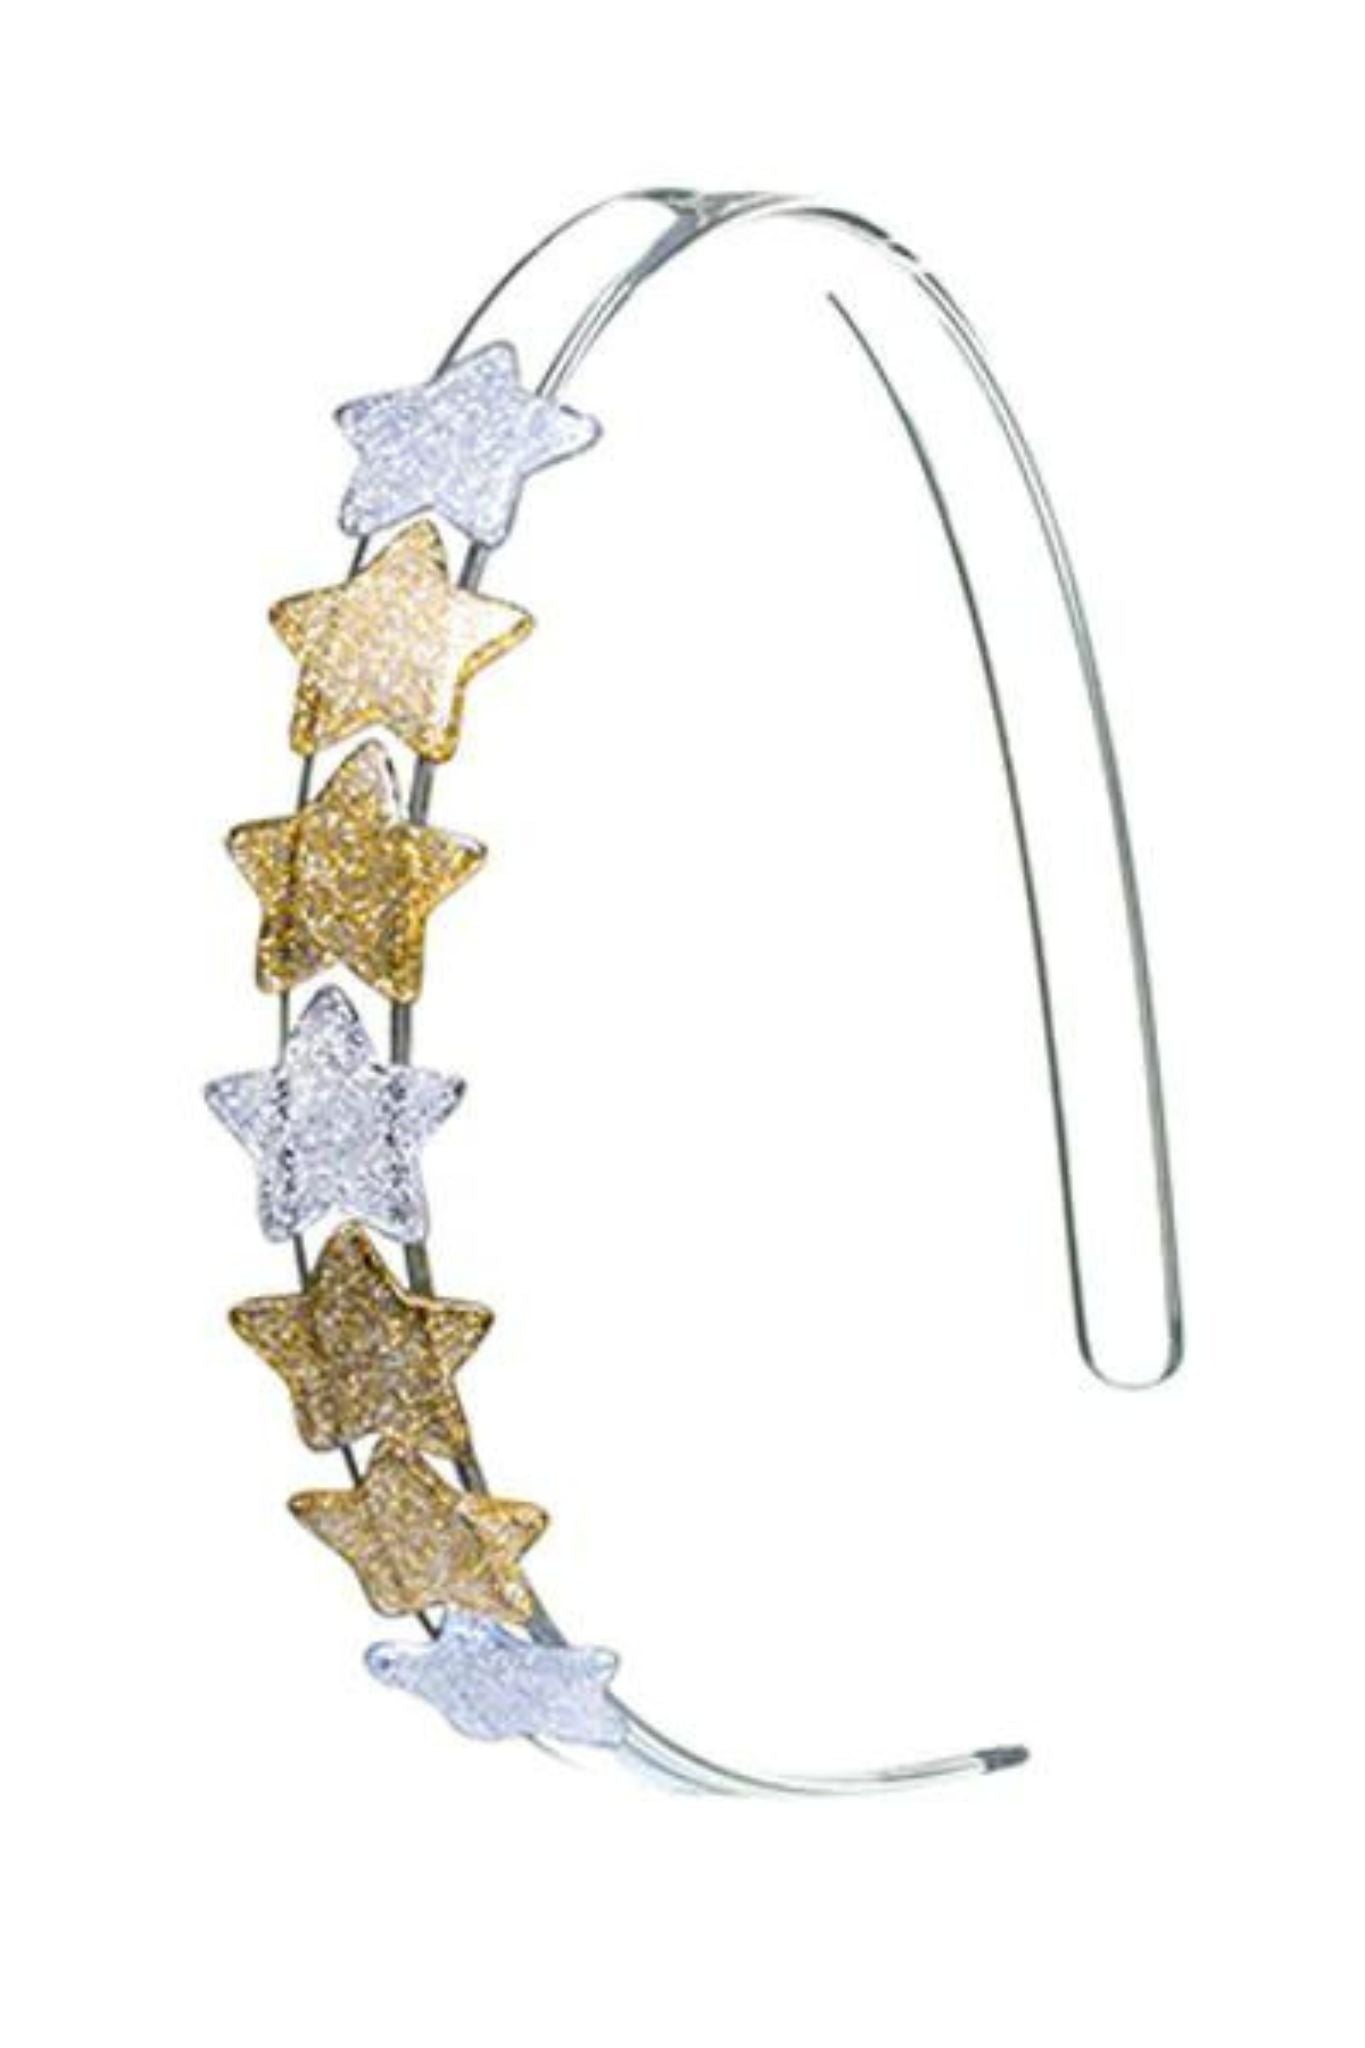 Lilies & Roses NY Stars Glitter Gold Silver Headband